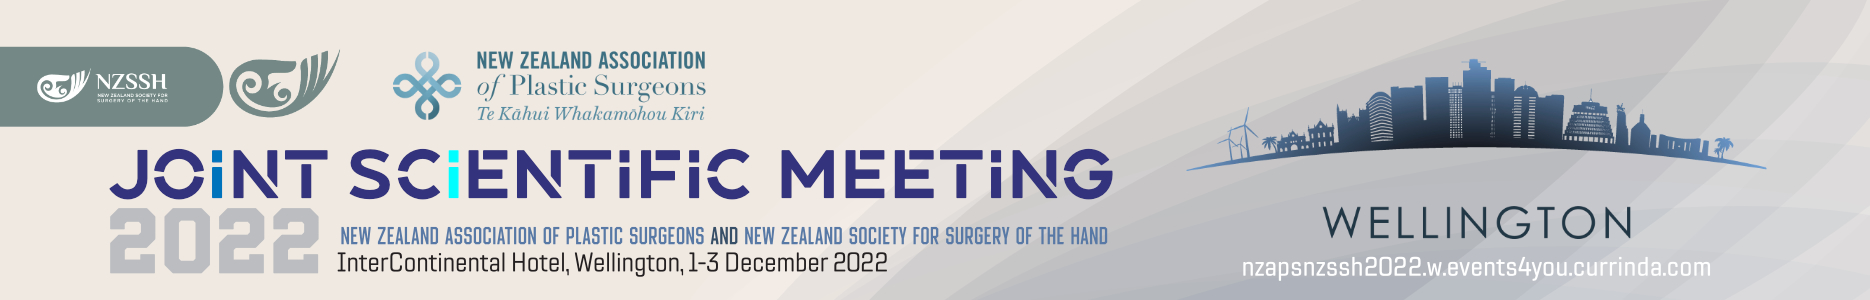 NZAPS_Scientific_Meeting_1870x300_Web_221647300442.jpg